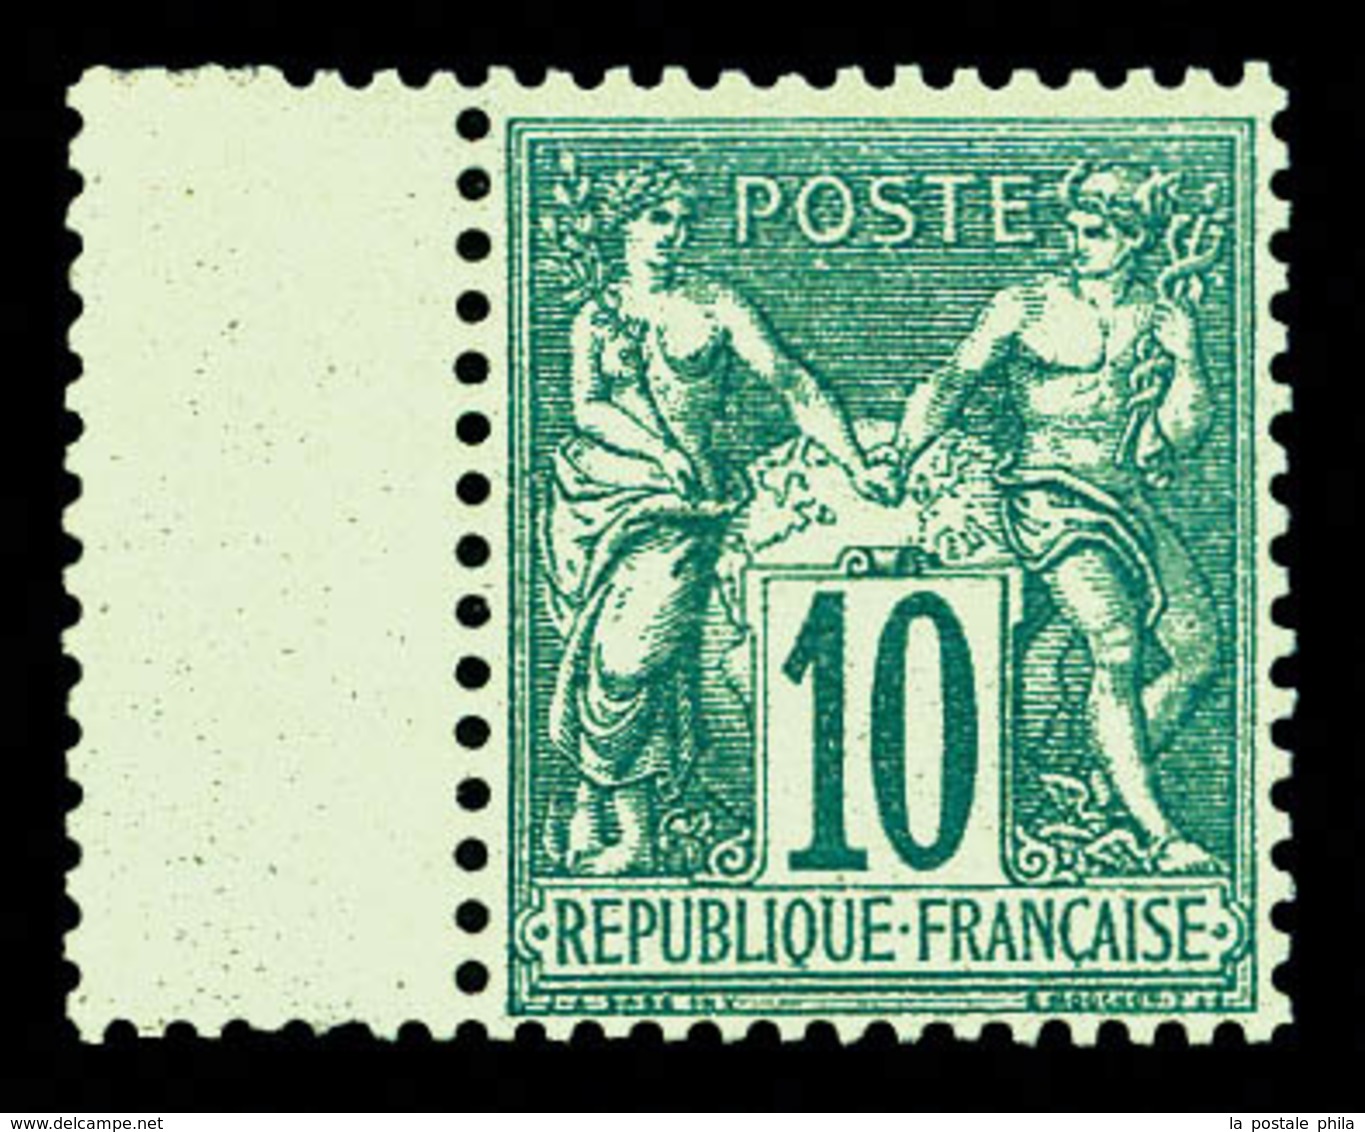 ** N°65, 10c Vert Type I Bord De Feuille, Très Bon Centrage, Fraîcheur Postale. SUP (certificat)  Qualité: ** - 1876-1878 Sage (Type I)